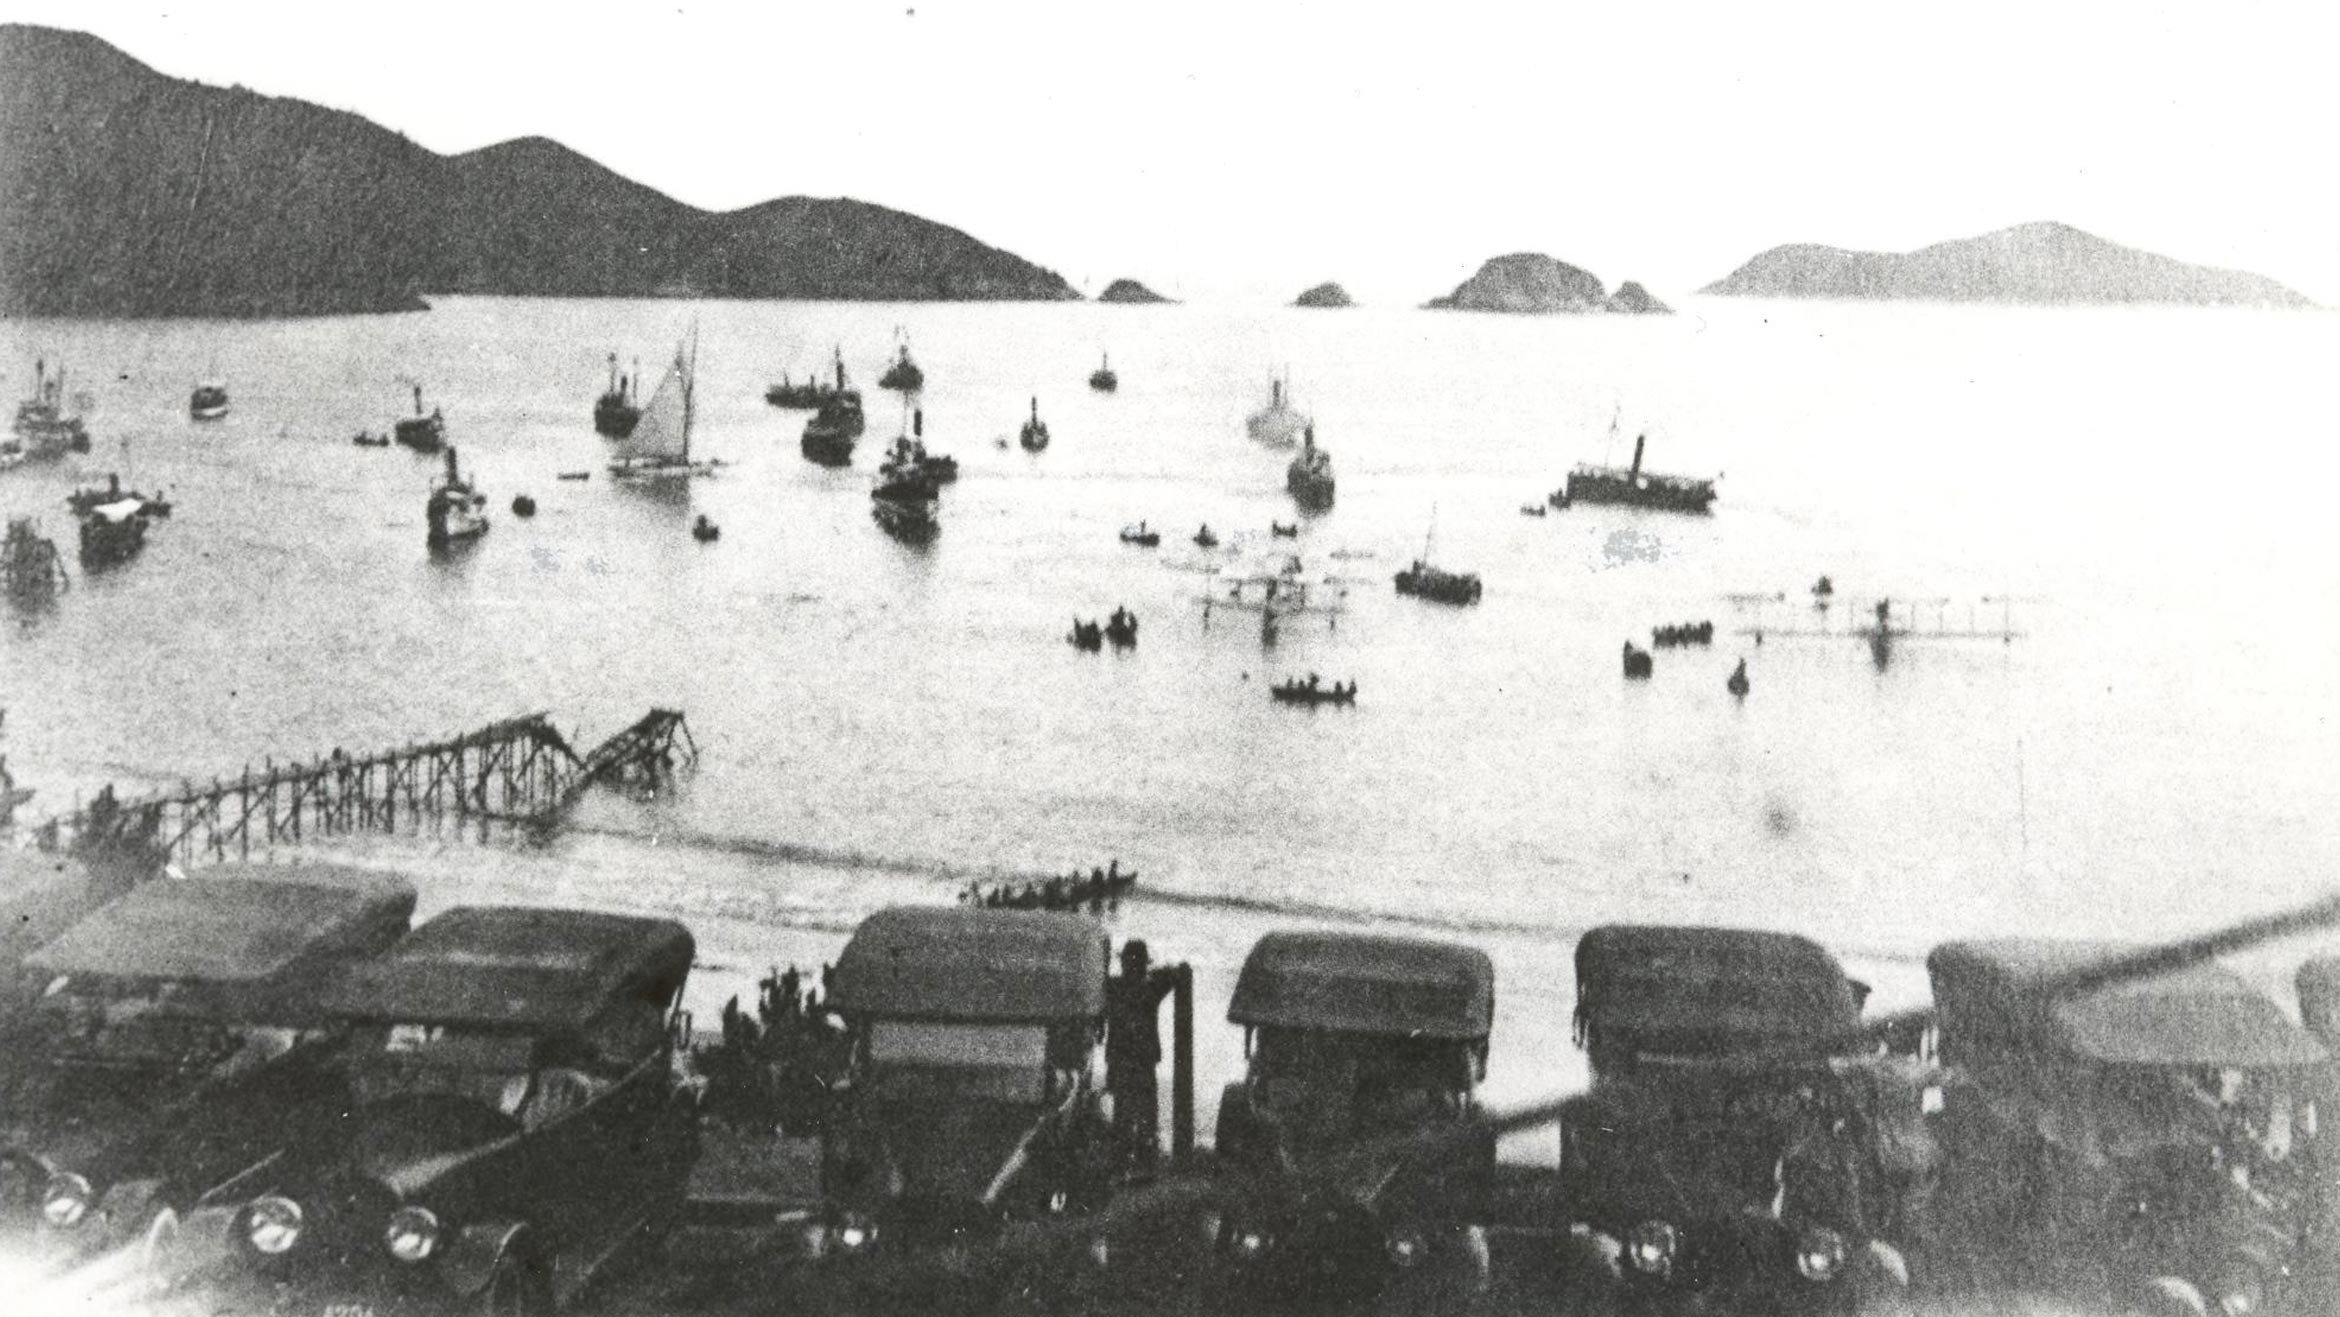 The Repulse Bay opened its doors in 1920